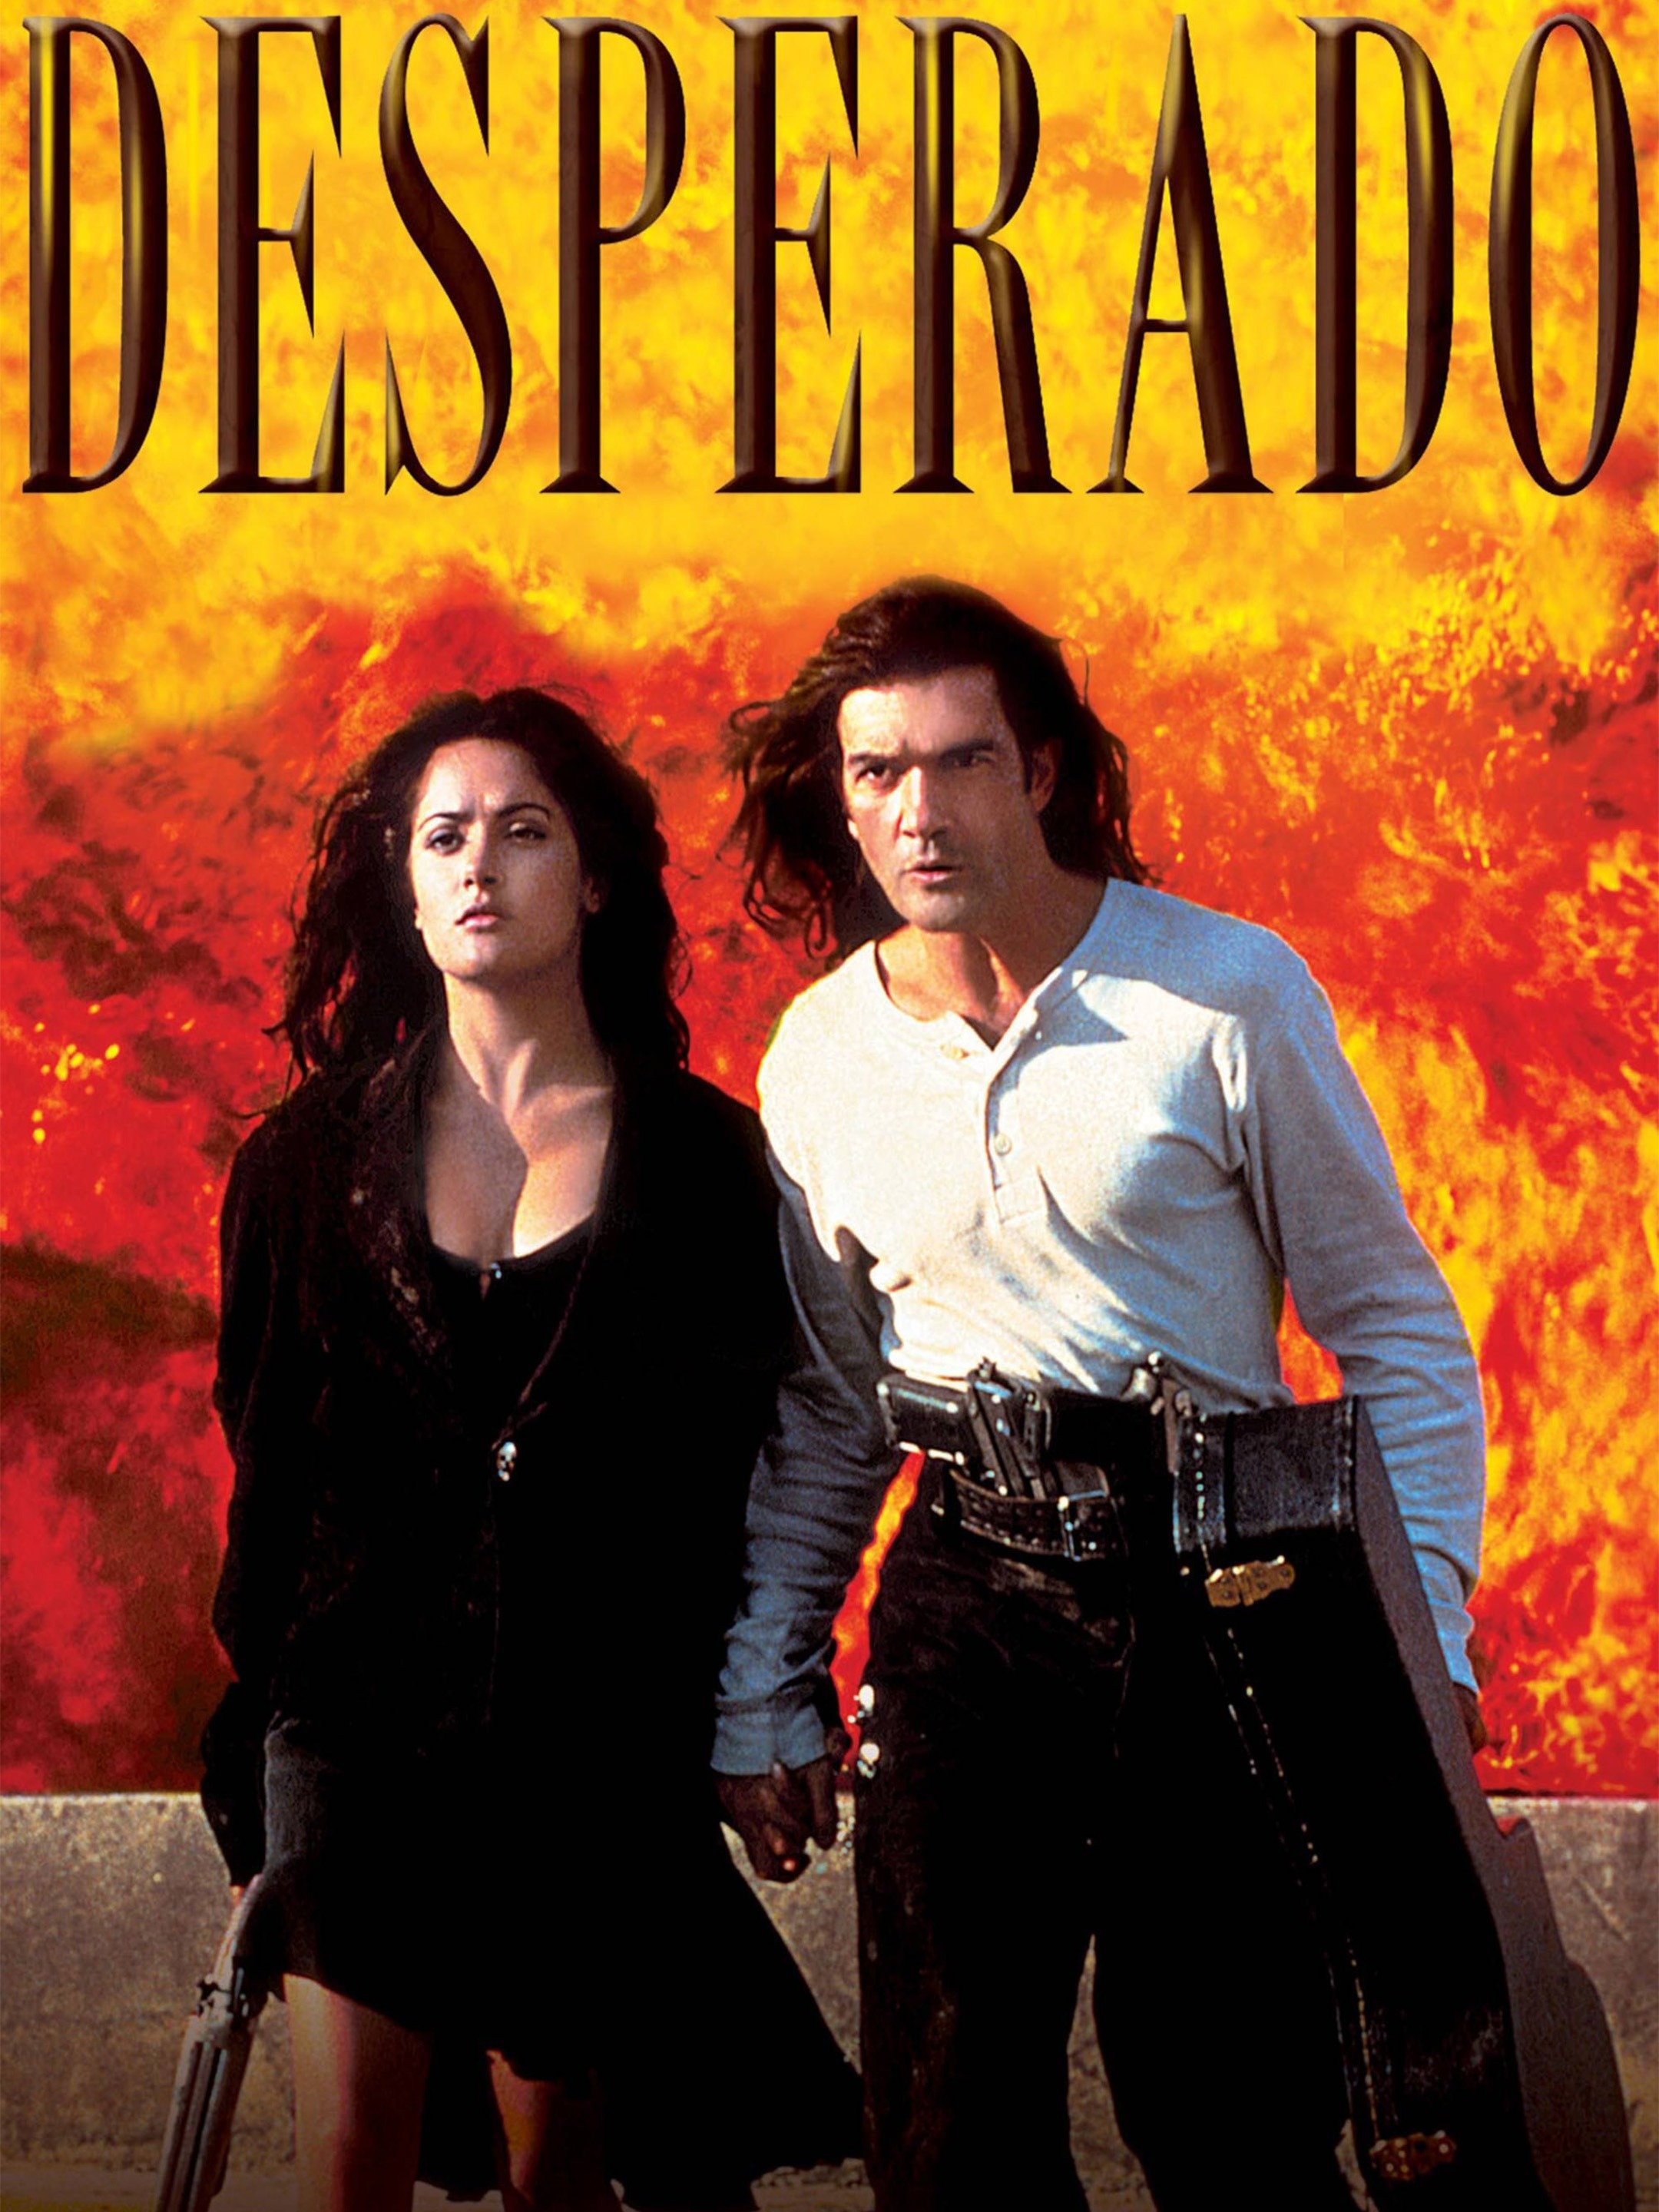 Desperado (1995) - Movie Review / Film Essay